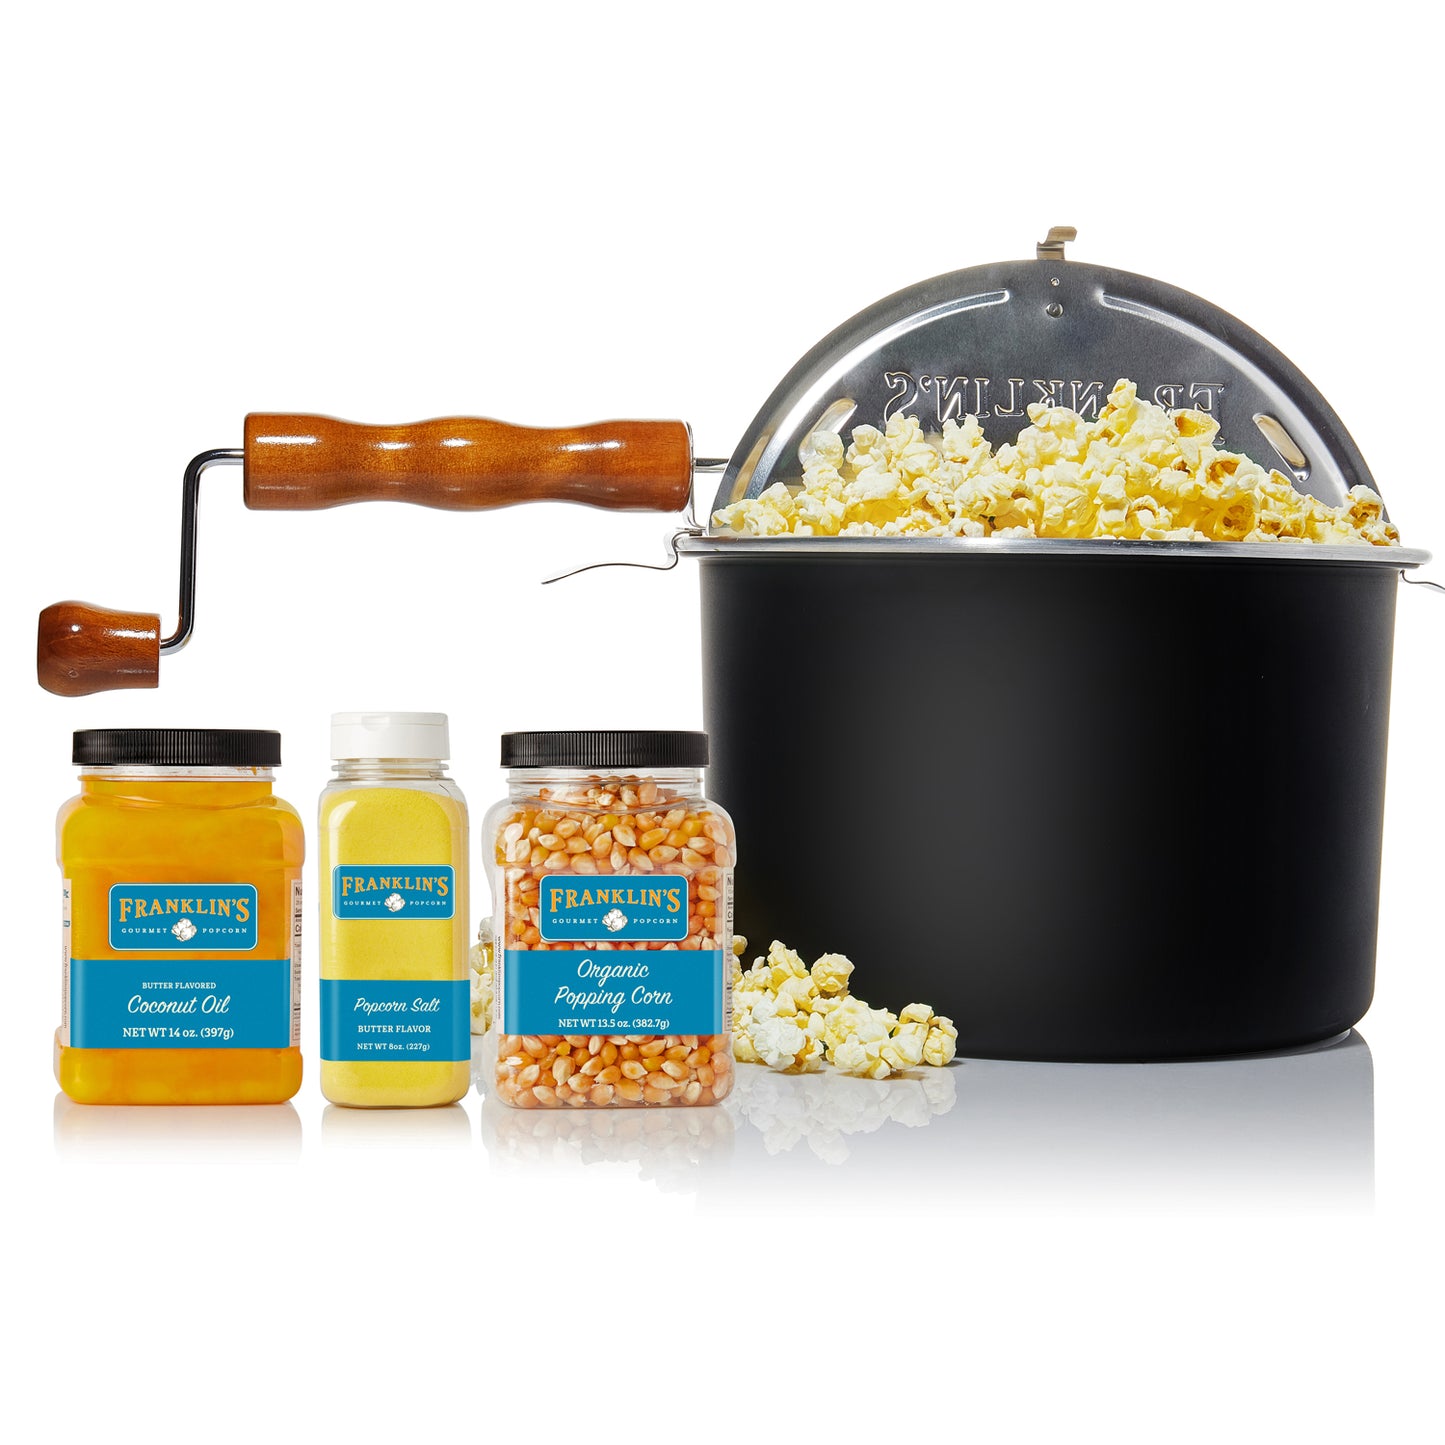 6oz Coconut Oil & White Popcorn kits